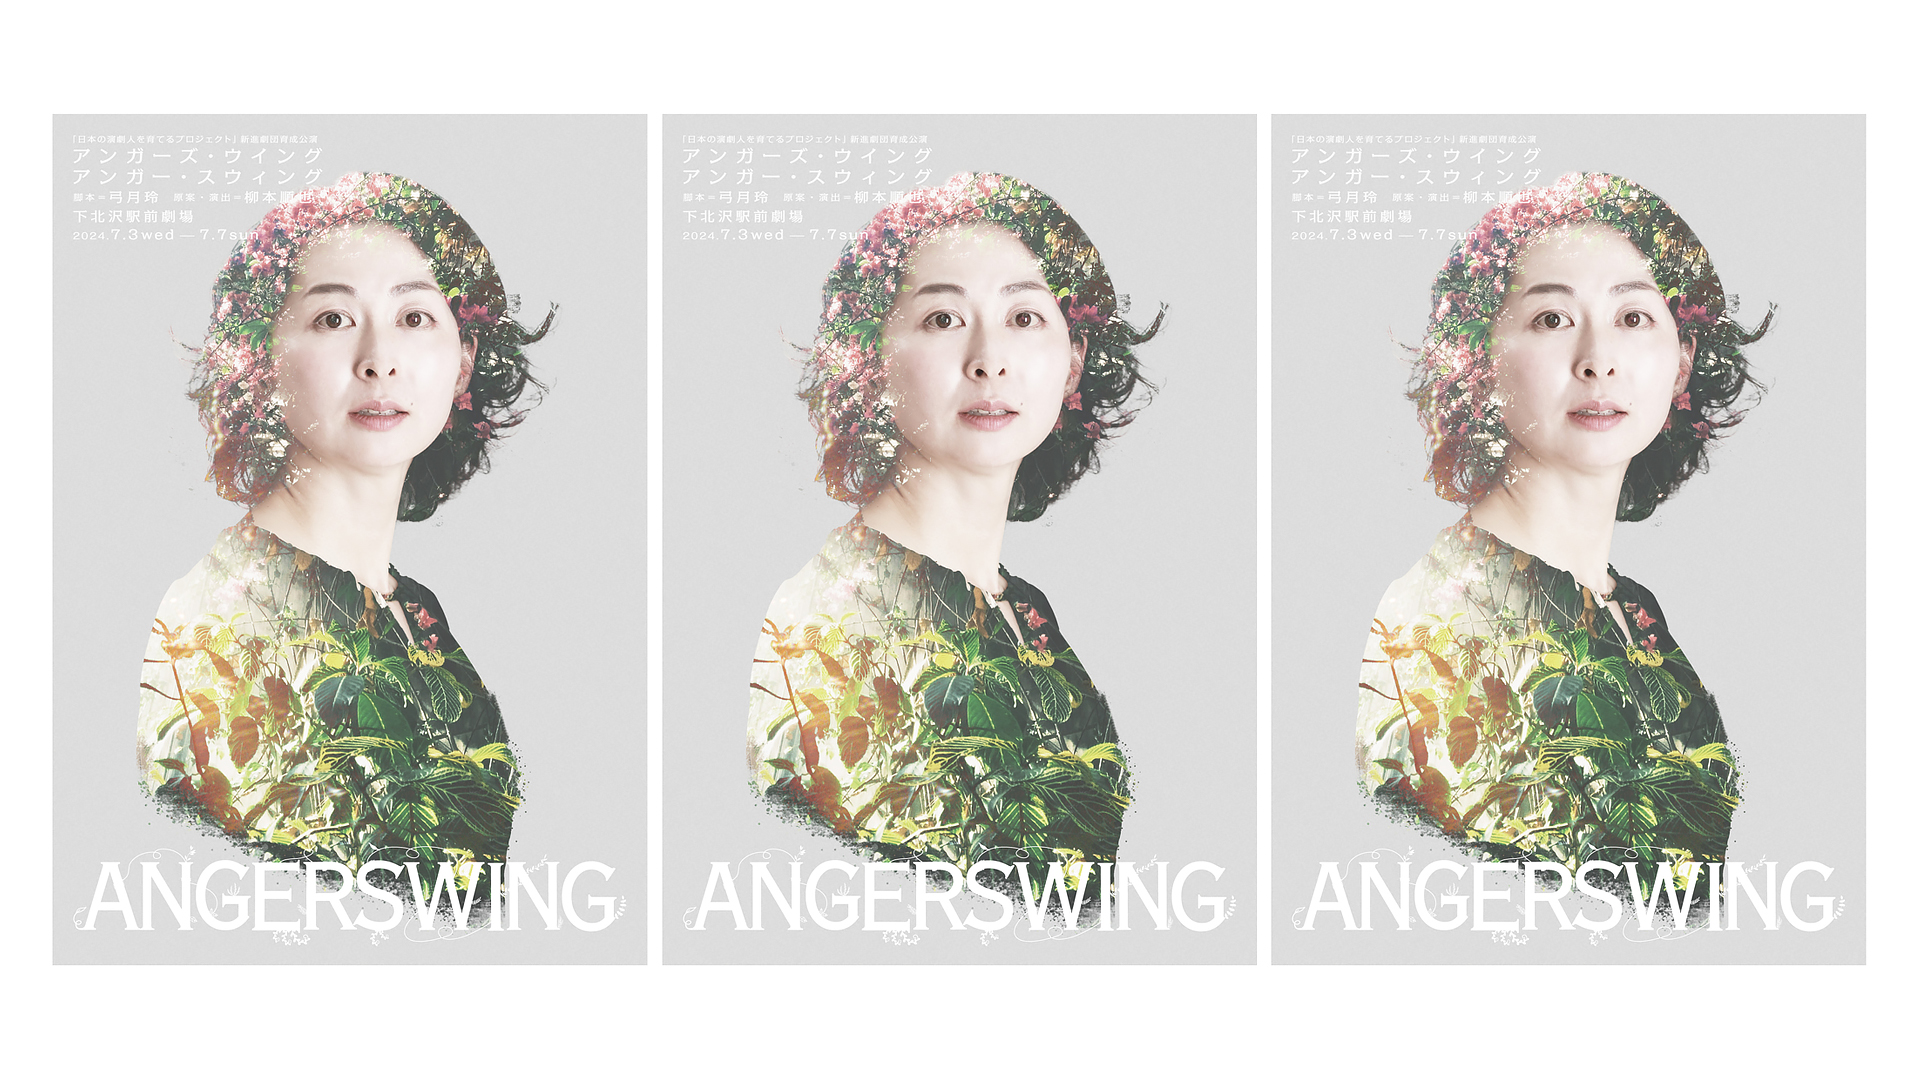 日本劇団協議会主催「日本の演劇人を育てるプロジェクト」新進劇団育成公演
『ANGERSWINGS』